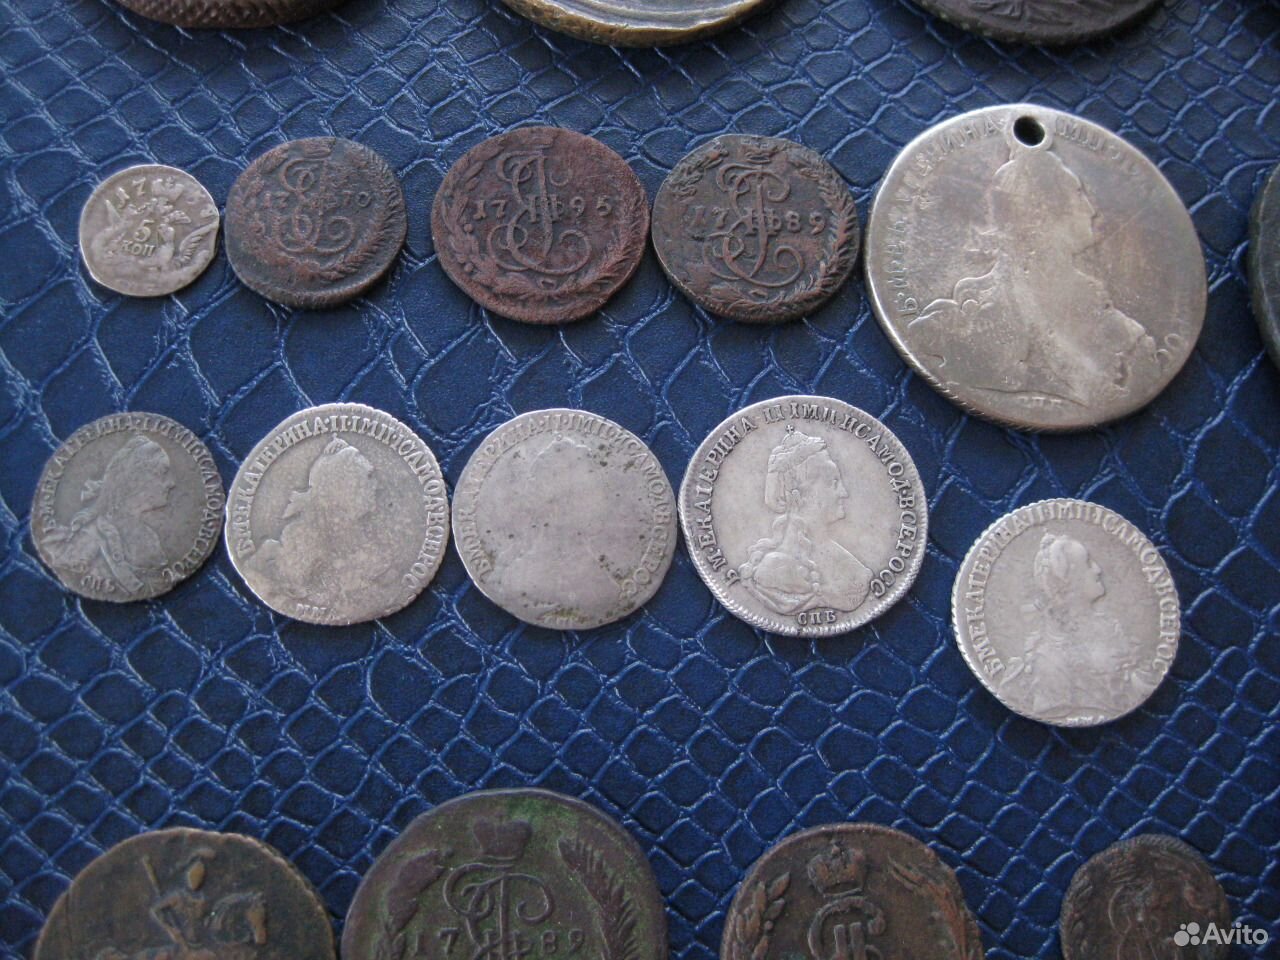 Купить монеты на авито в спб. Старинные монеты Екатерины 2. Самые ценные старинные монеты Екатерины Великой. Старинные монеты с Екатериной фото. Старый Монетка Елизабетта второй 1982г.